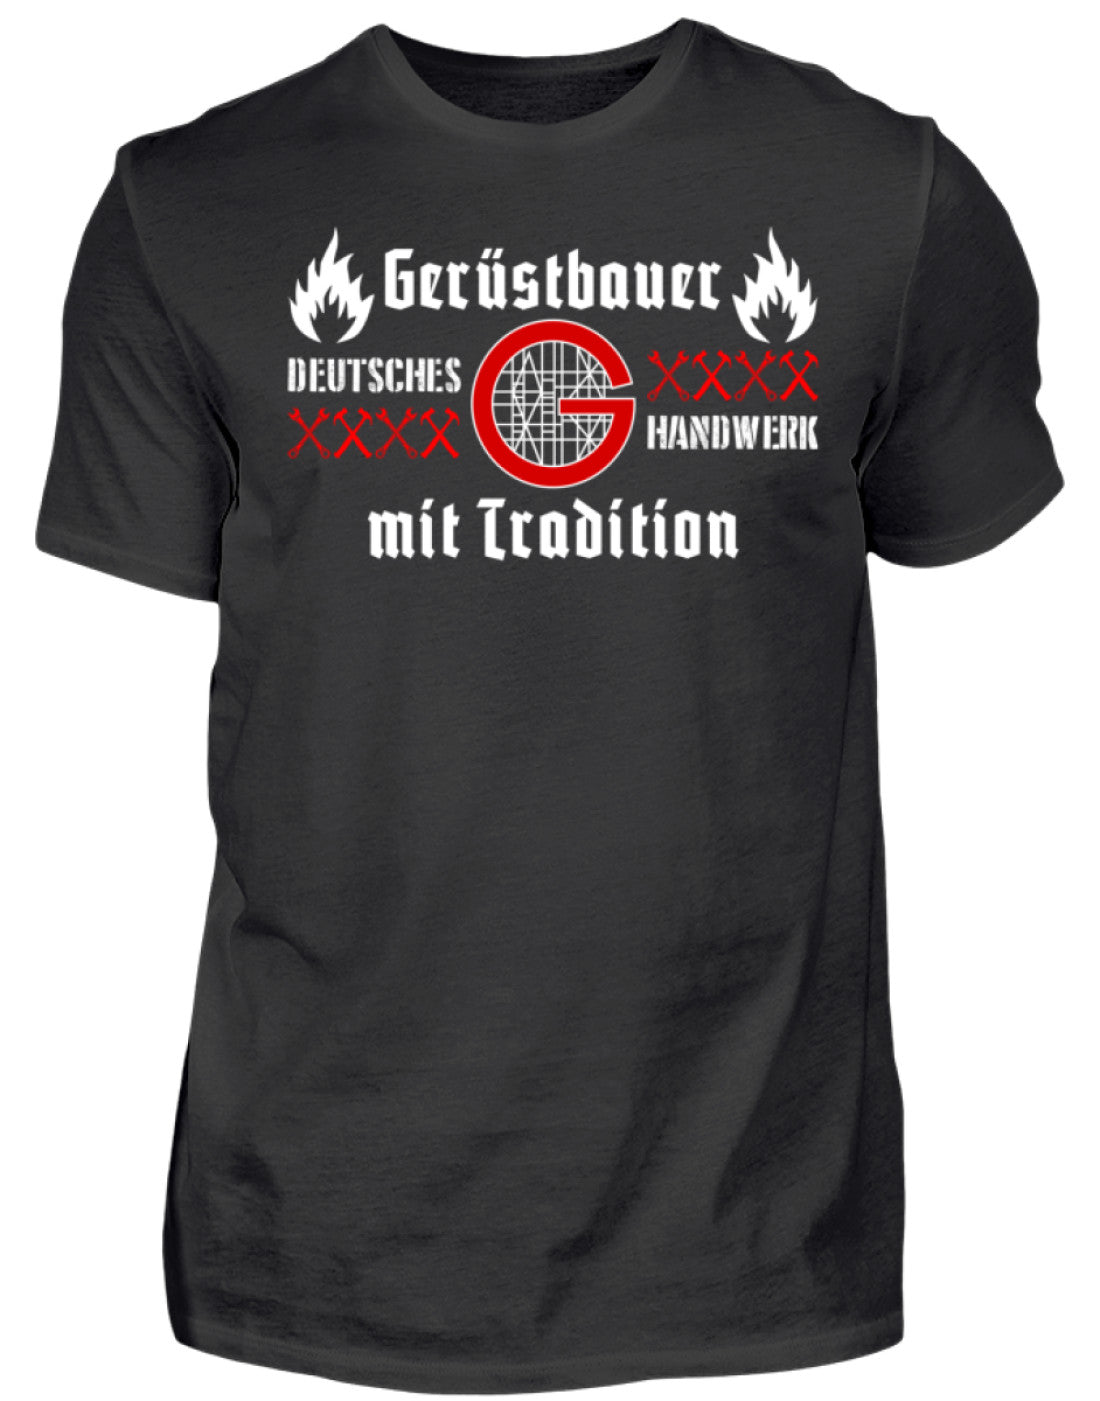 Gerüstbauer T-Shirt Handwerk mit Tradition €21.95 Gerüstbauer - Shop >>